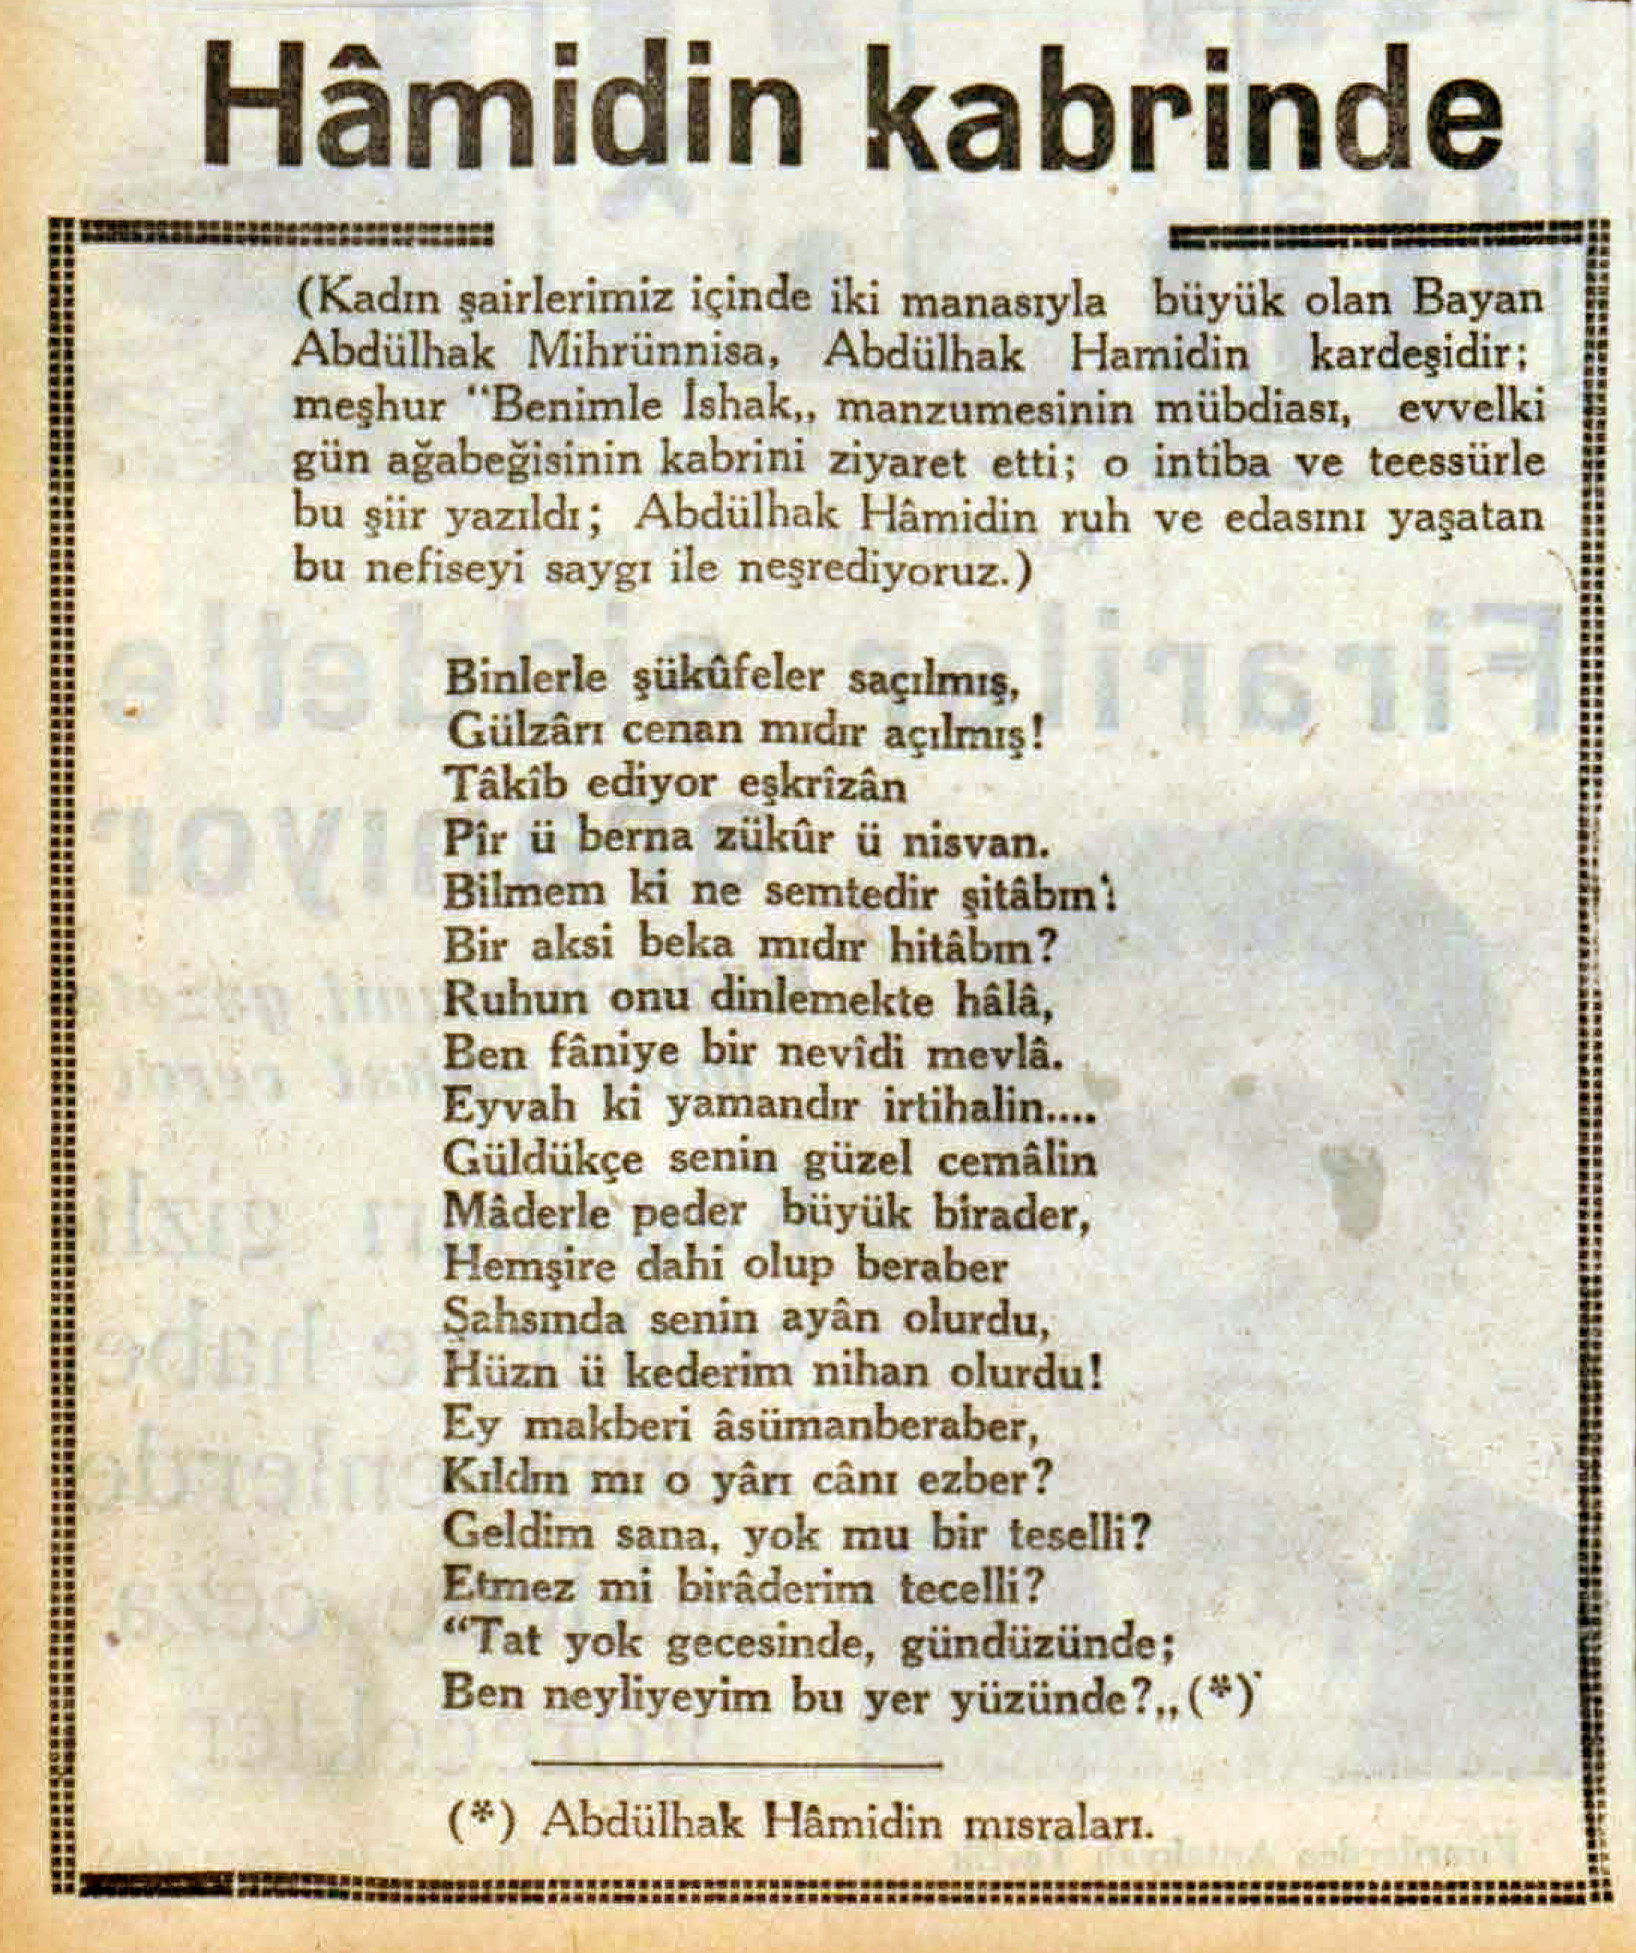 Abdülhak Mihrünnisa hanımın, abisi Abdülhak Hamit Tarhan'ın kabri başında yazdığı şiir.